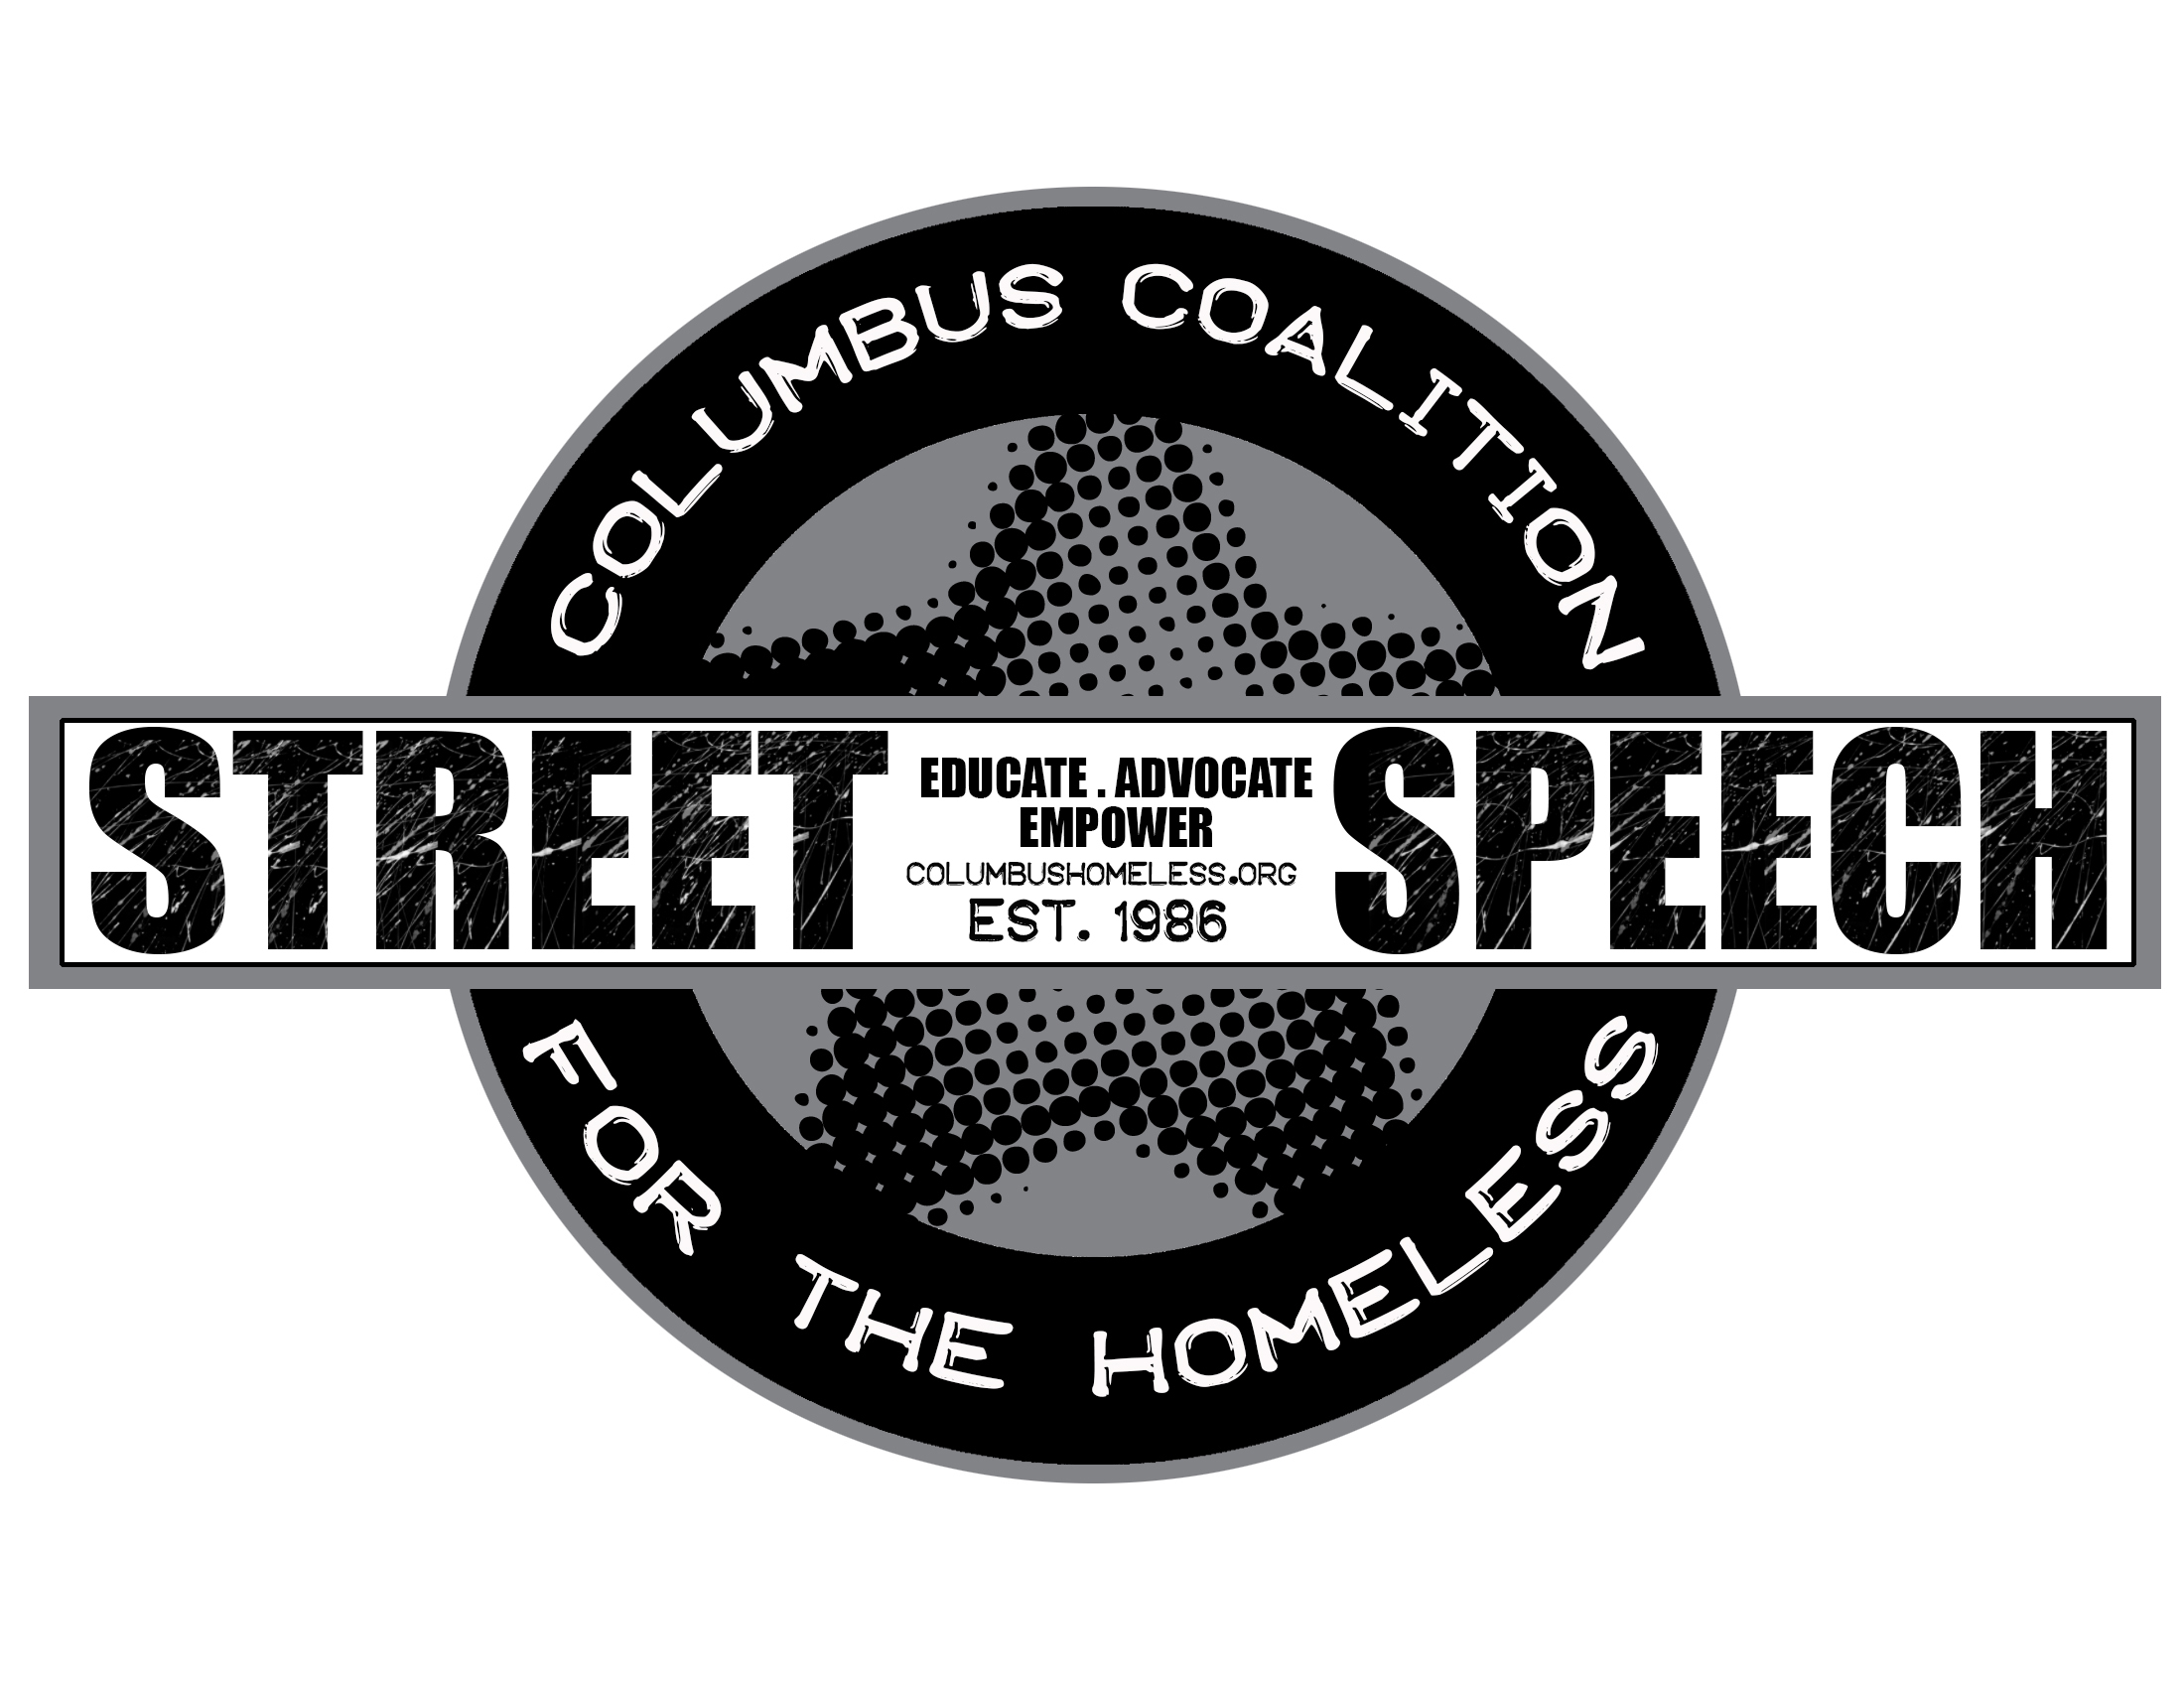 Columbus Coalition for the Homeless logo.jpg (633 kb)